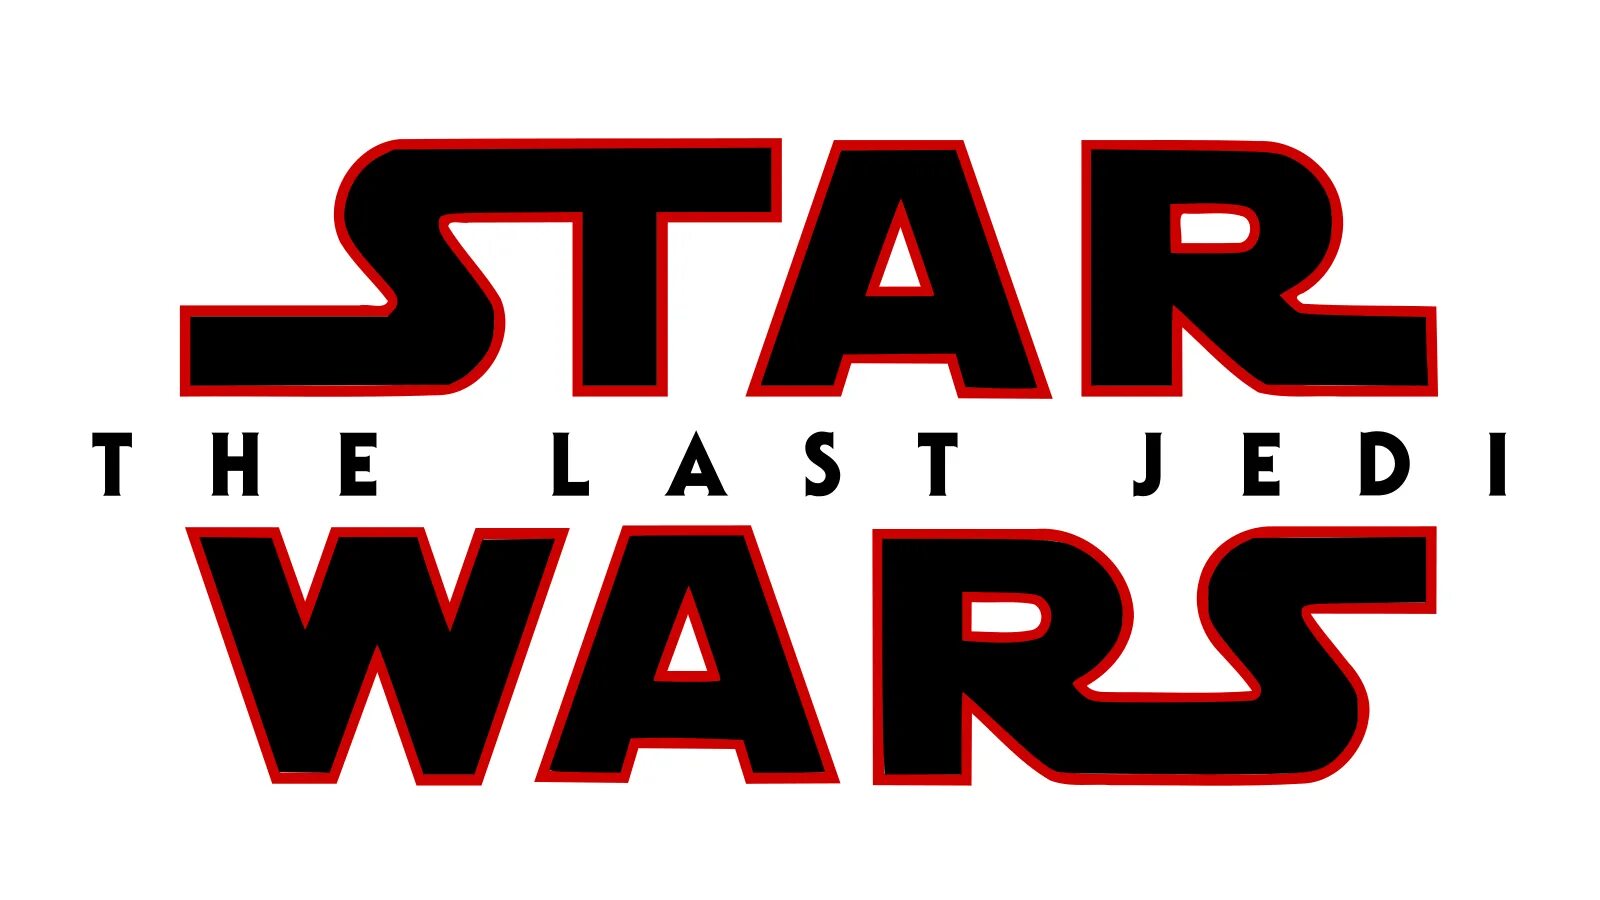 Star Wars - the last Jedi. Звездные войны логотип. Star Wars надпись. Надпись Стар ВАРС без фона. Звездные войны на английском с субтитрами